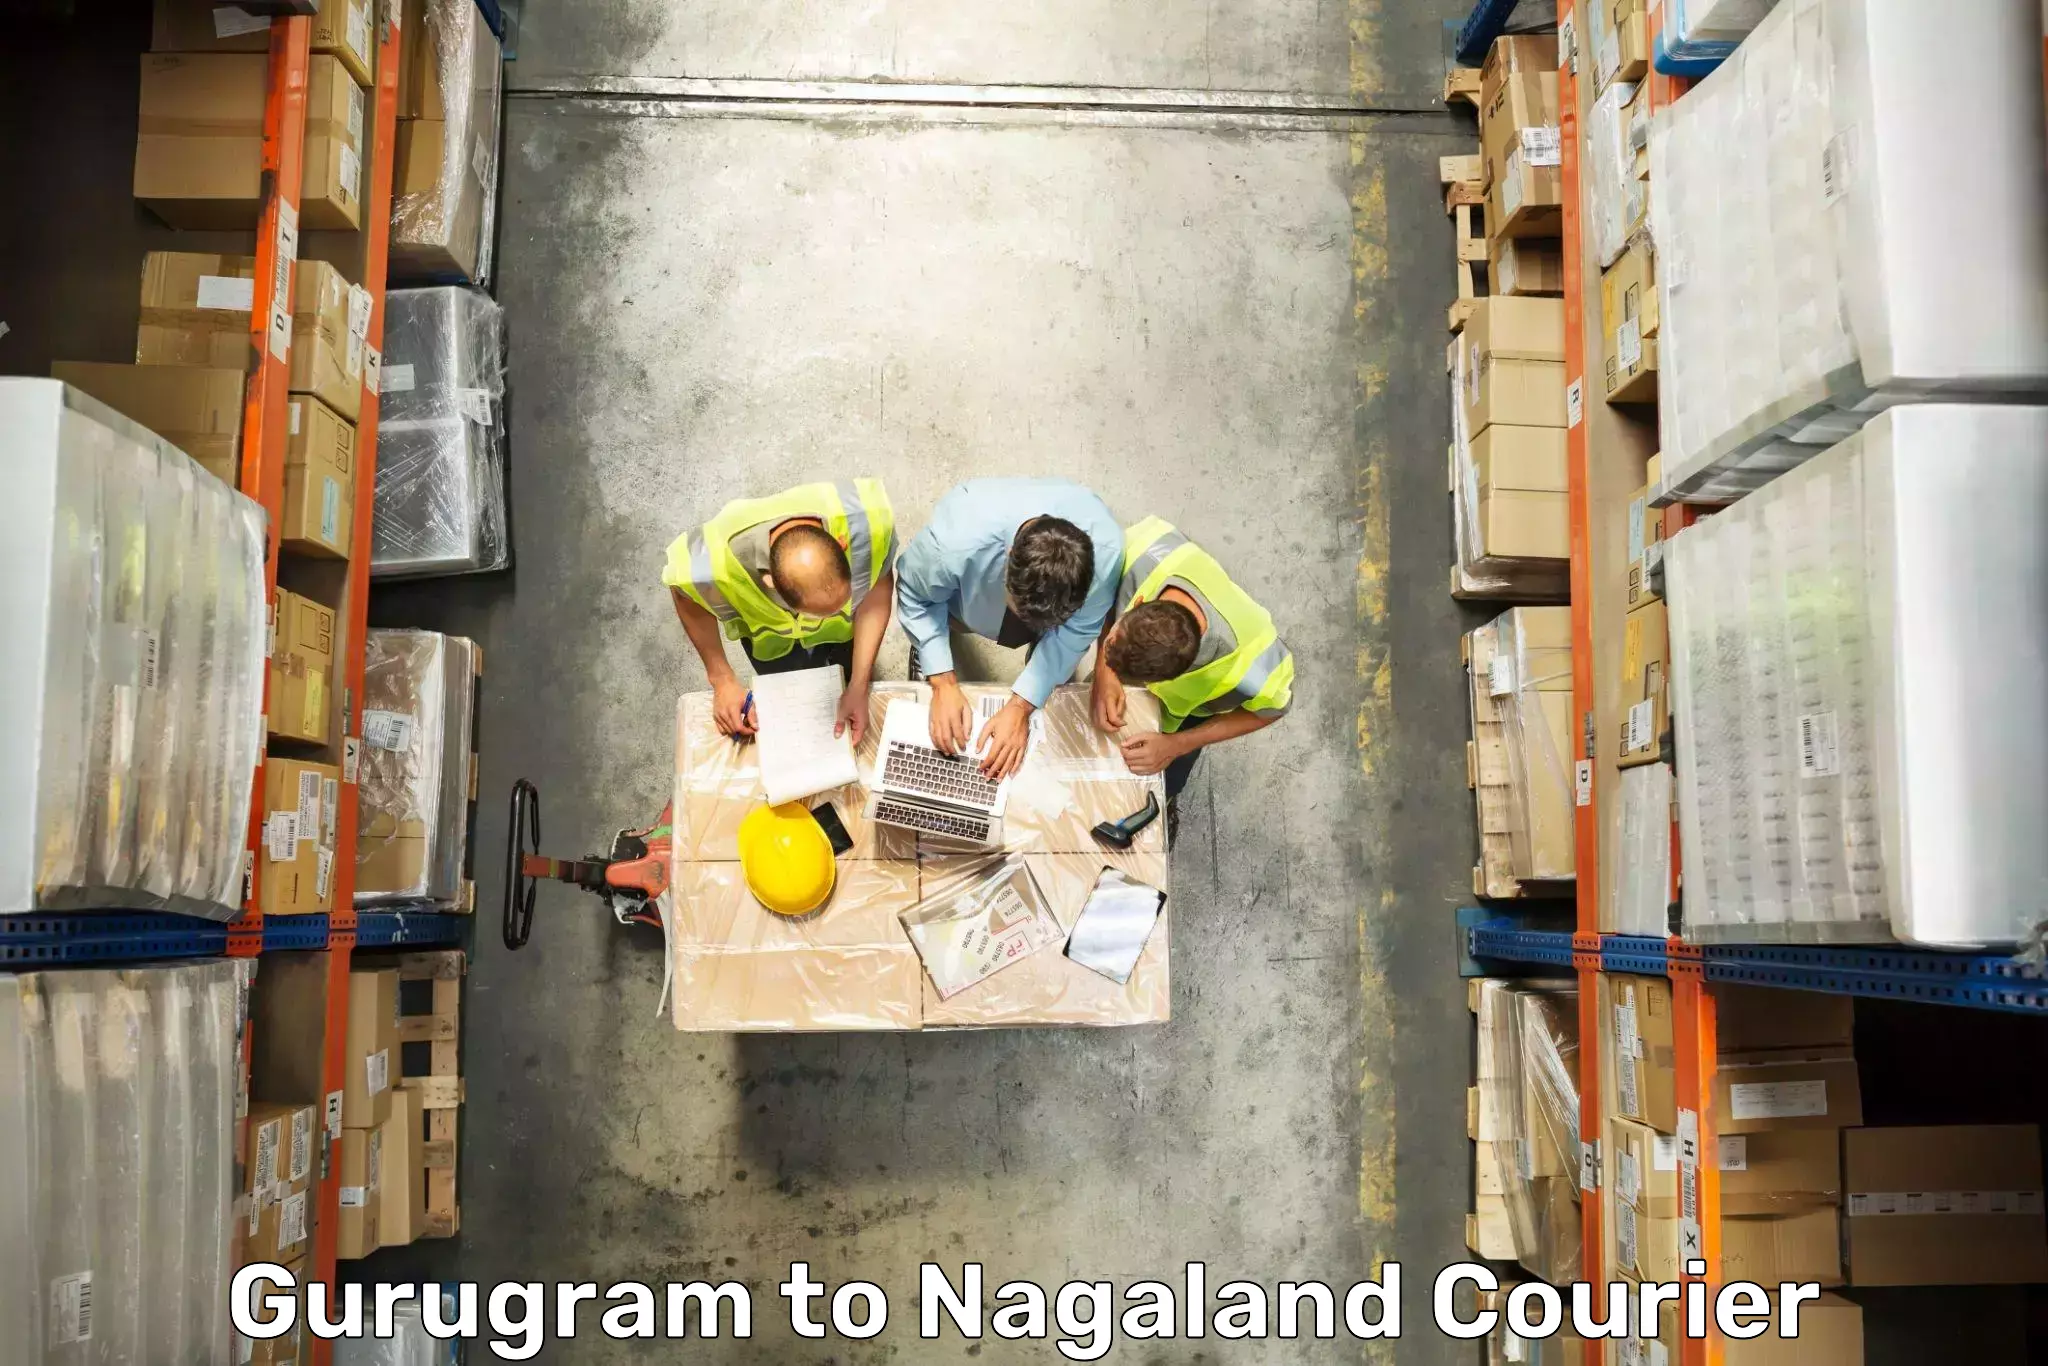 Luggage transport company Gurugram to Longleng